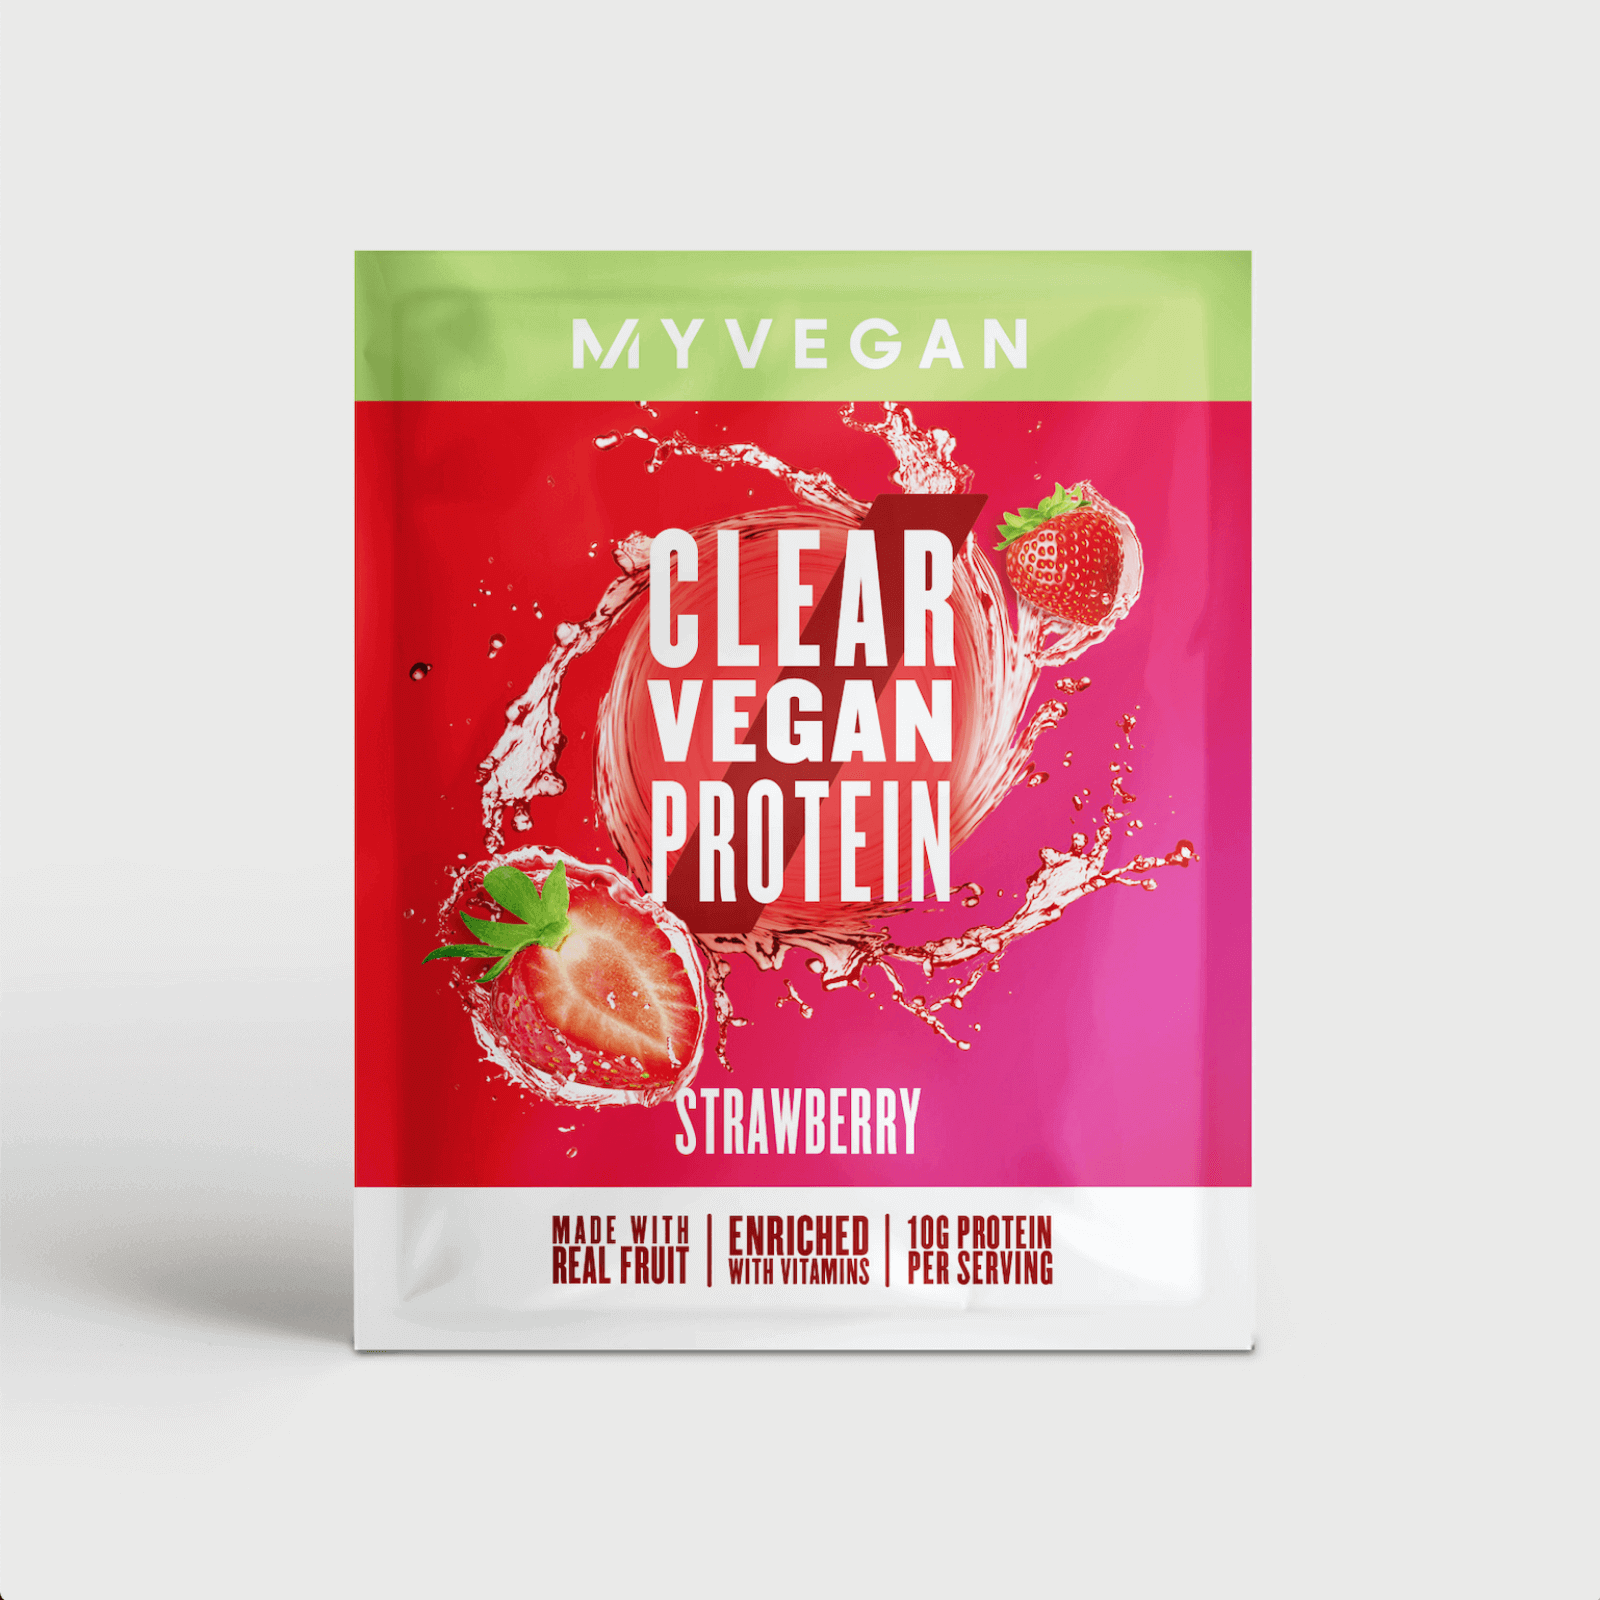 Proteína Clear Vegan (Amostra) - 16g - Morango